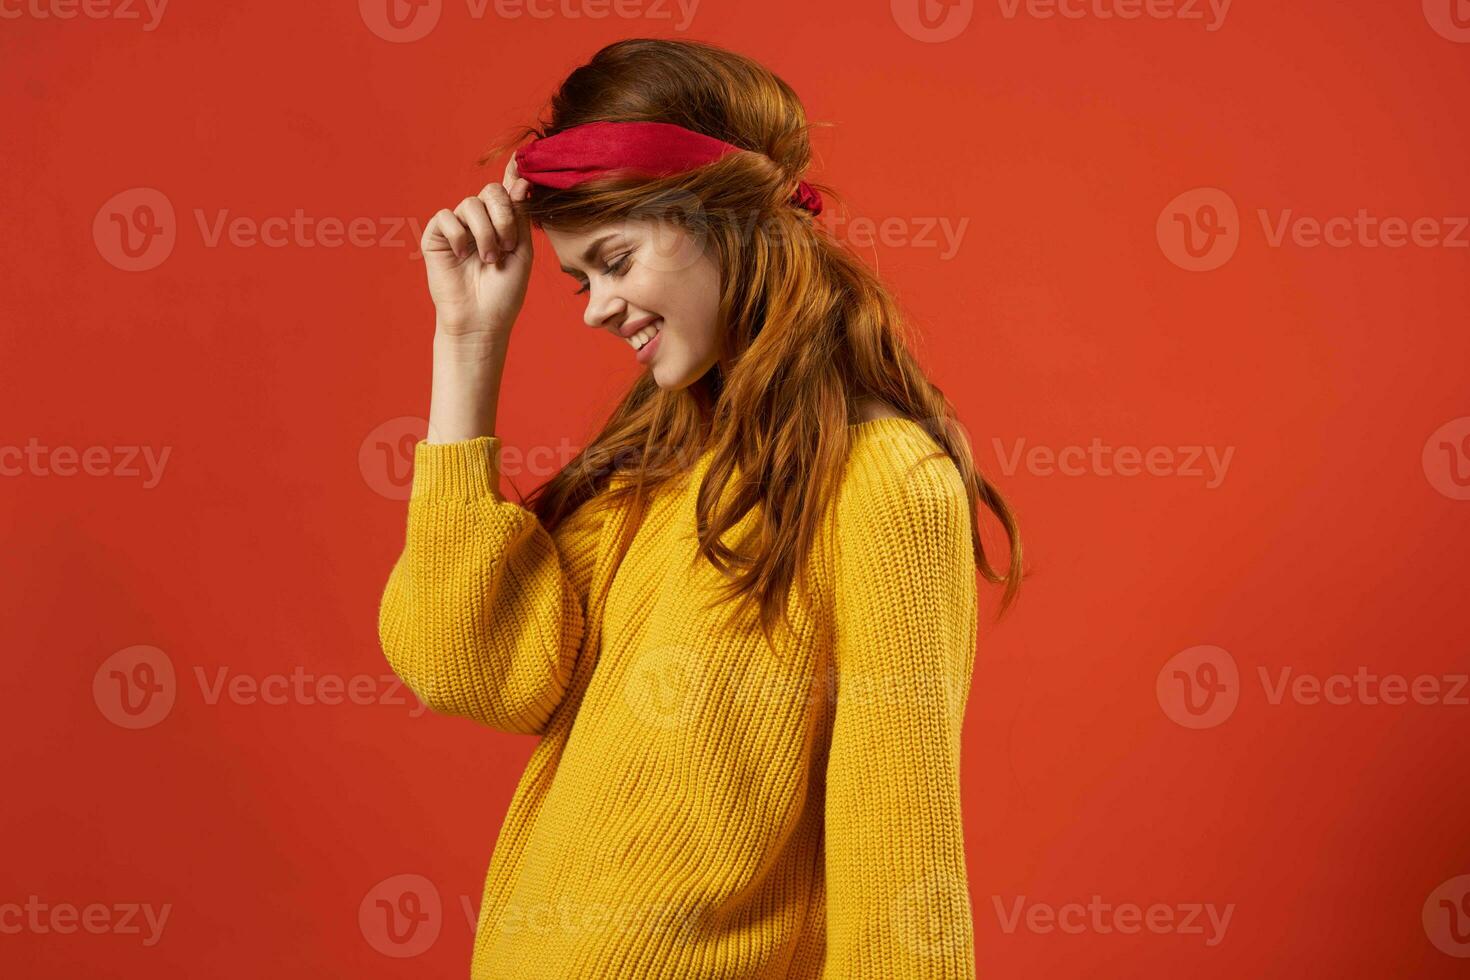 bonita mulher com vermelho arco de cabelo amarelo suéter moda hipster foto